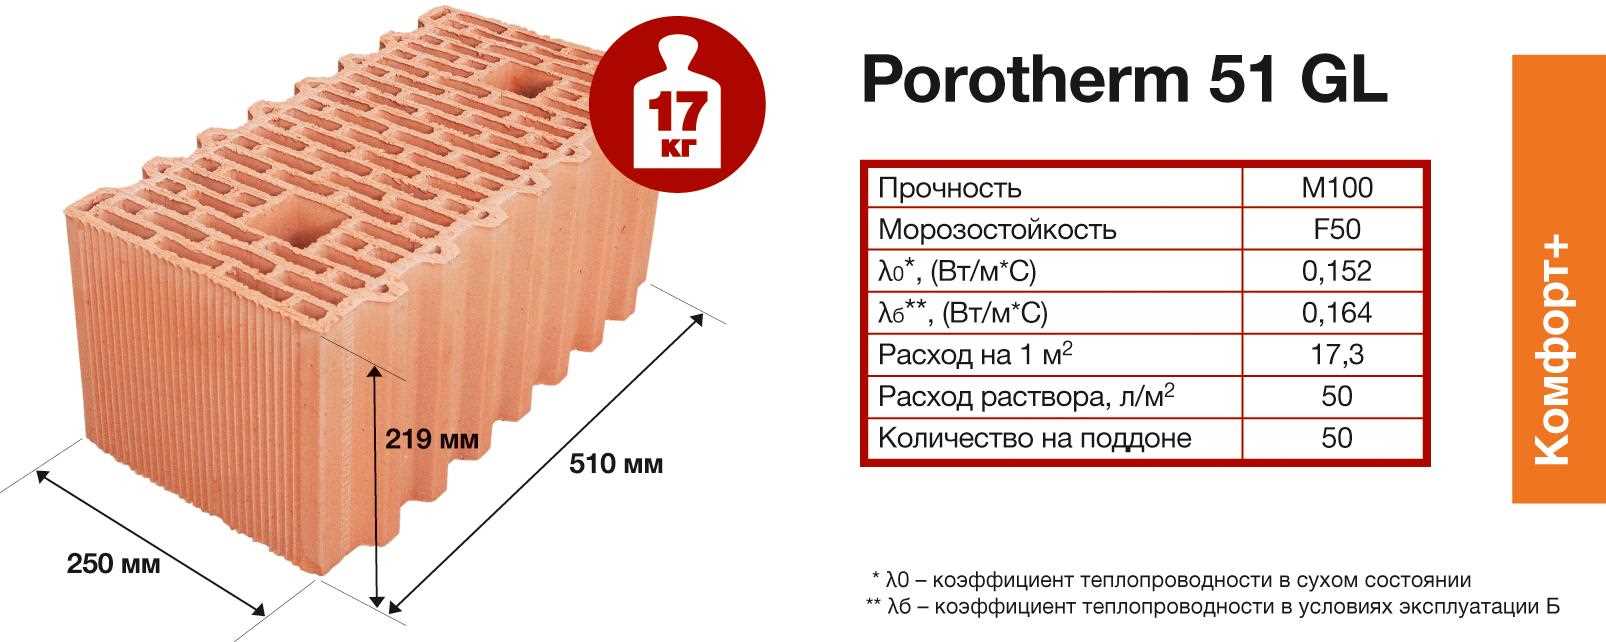 Что такое крупноформатные керамические блоки, где применяются, в чем их преимущества?